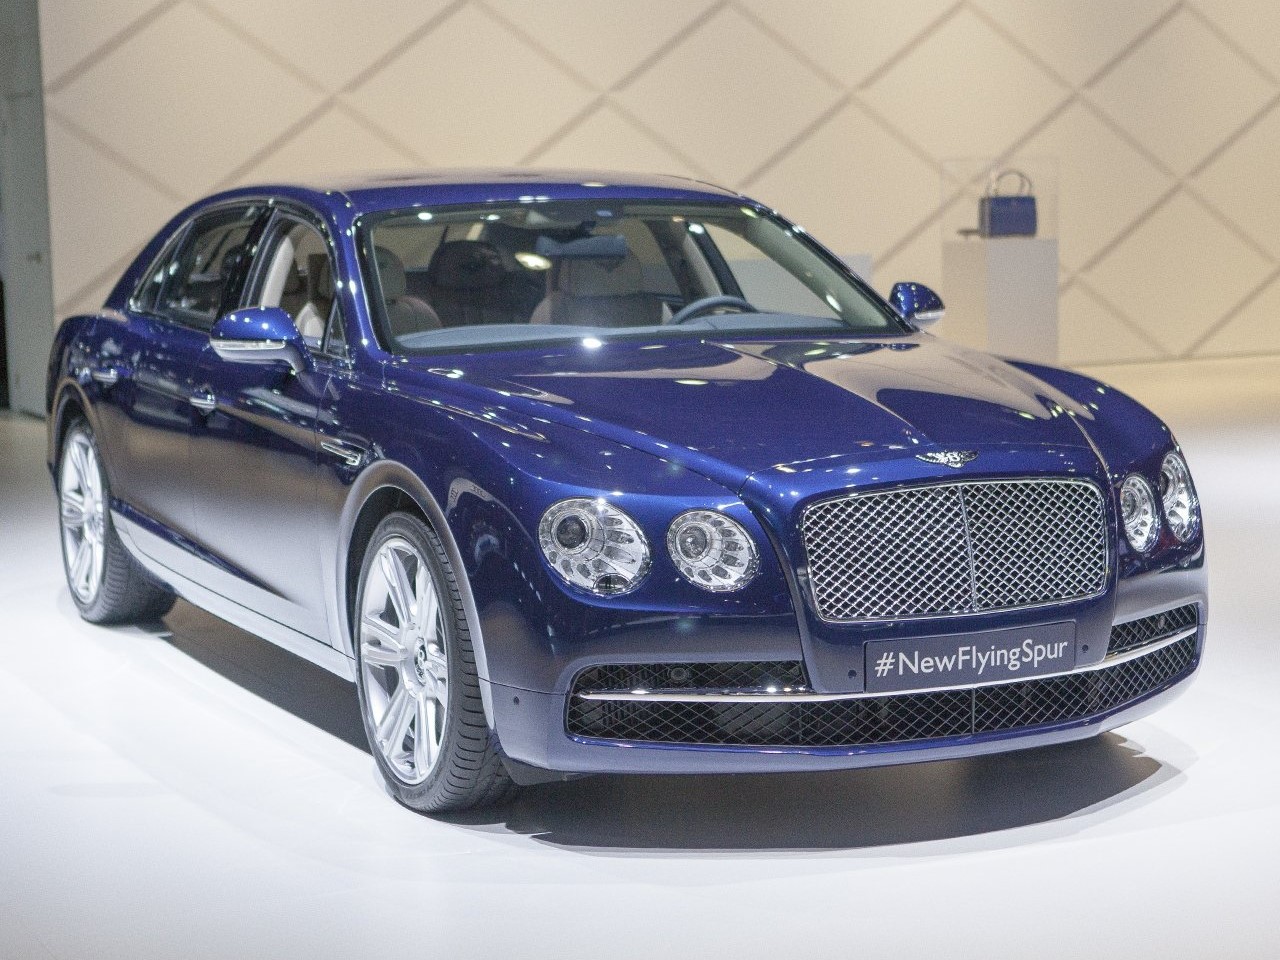 
Đặc biệt là khi đặt nó cạnh hình ảnh xe Bentley Flying Spur hàng hiệu, mẫu Bentley 2 tỷ càng thể hiện rõ sự chênh lệch đẳng cấp.
